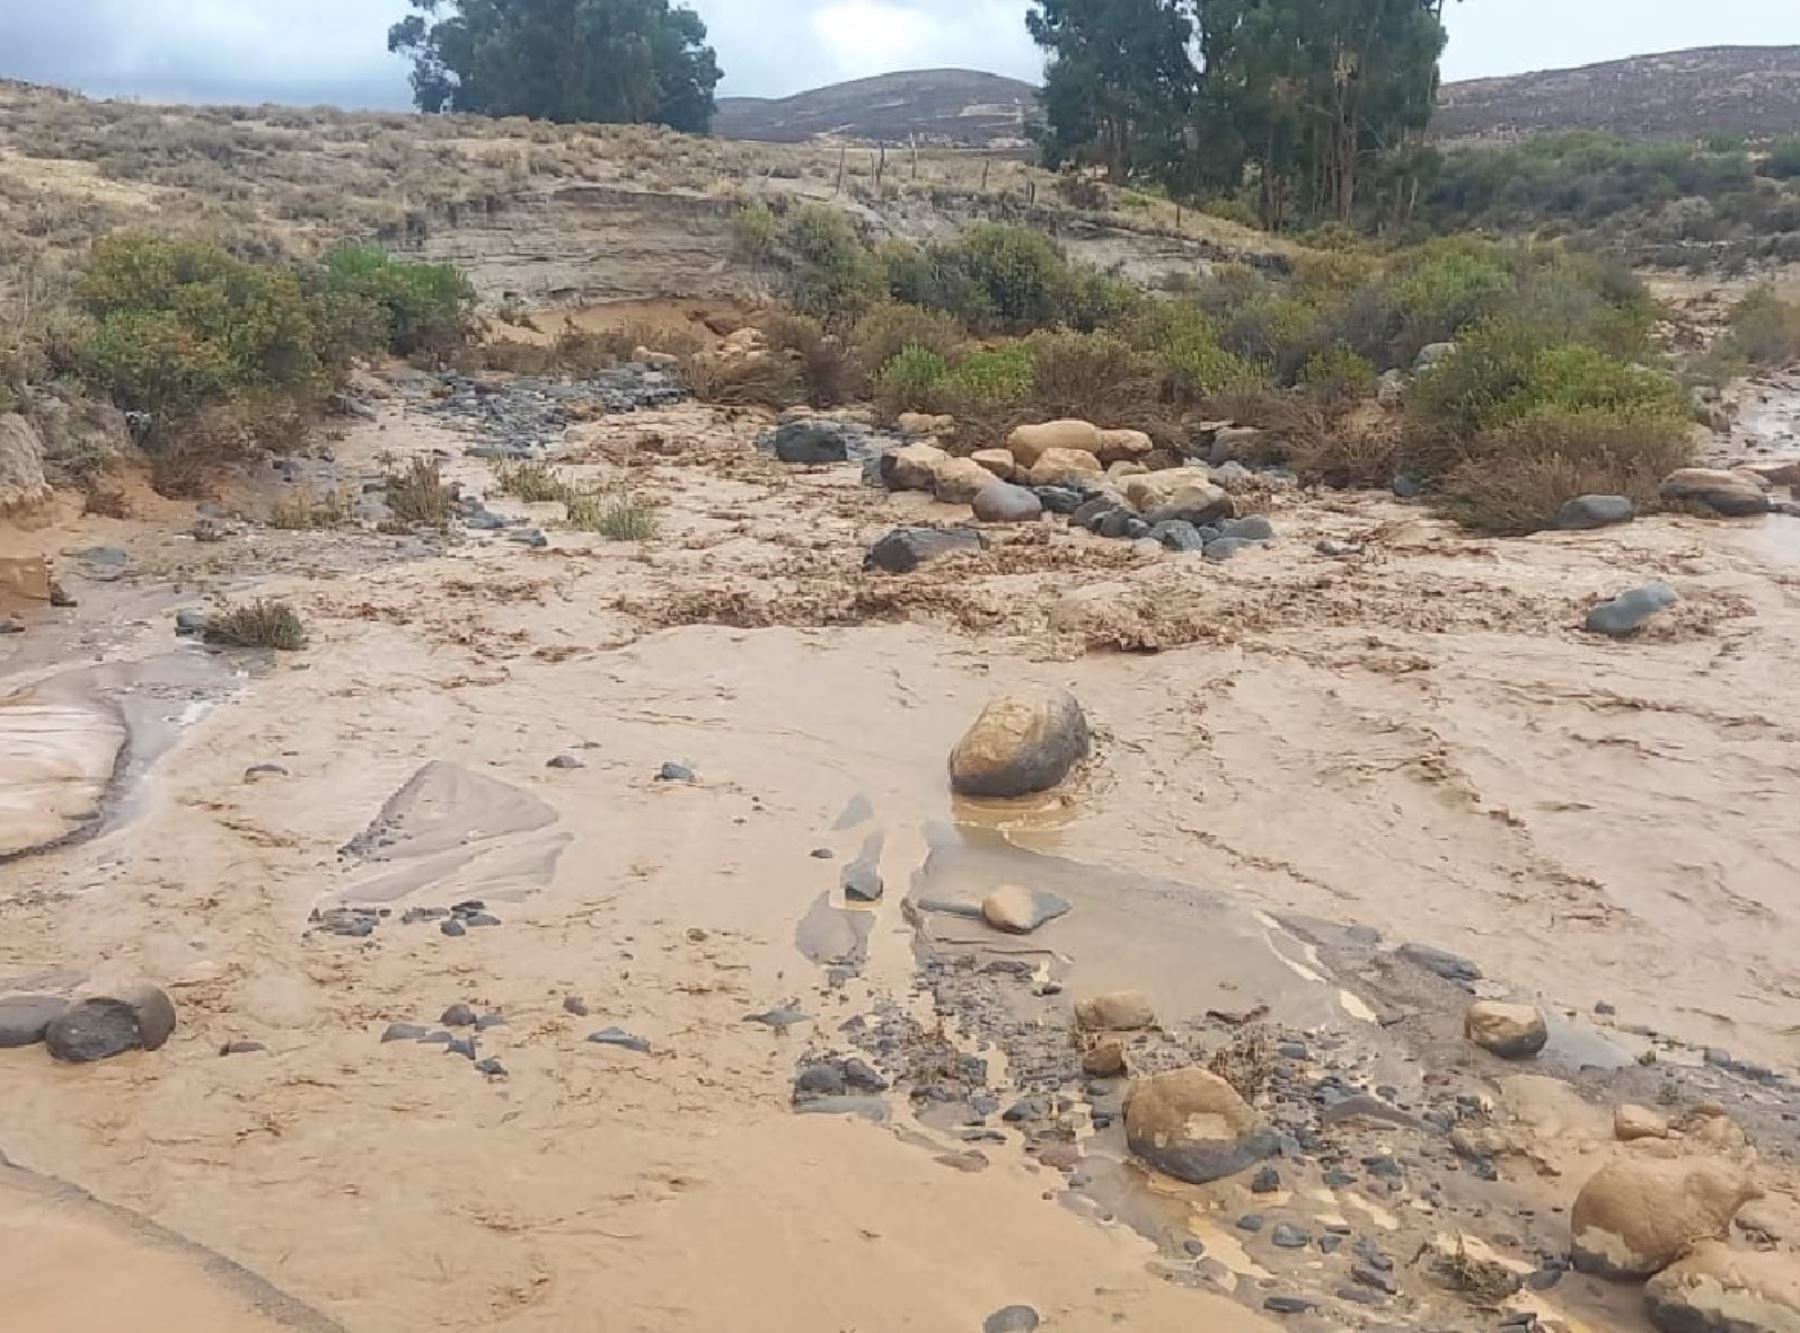 El Senamhi advirtió que las lluvias intensas continuarán en la región Arequipa hasta el miércoles  24 y recomendó a las autoridades y pobladores tomar las medidas de prevención ante posibles daños. ANDINA/Difusión